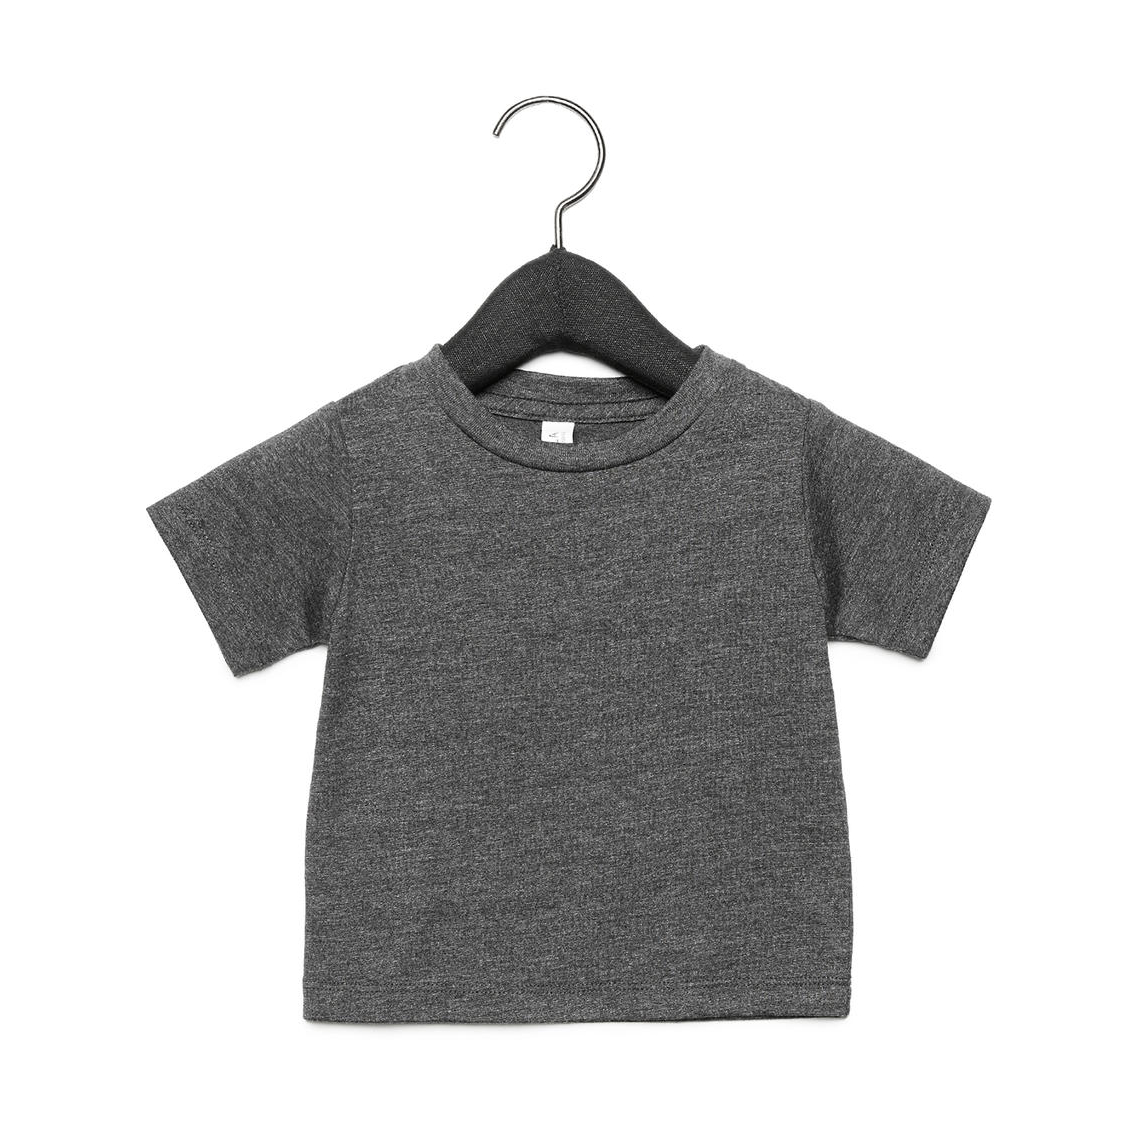 Tričko dětské Baby Jersey B + C s krátkým rukávem - tmavě šedé, 18-24 měsíců